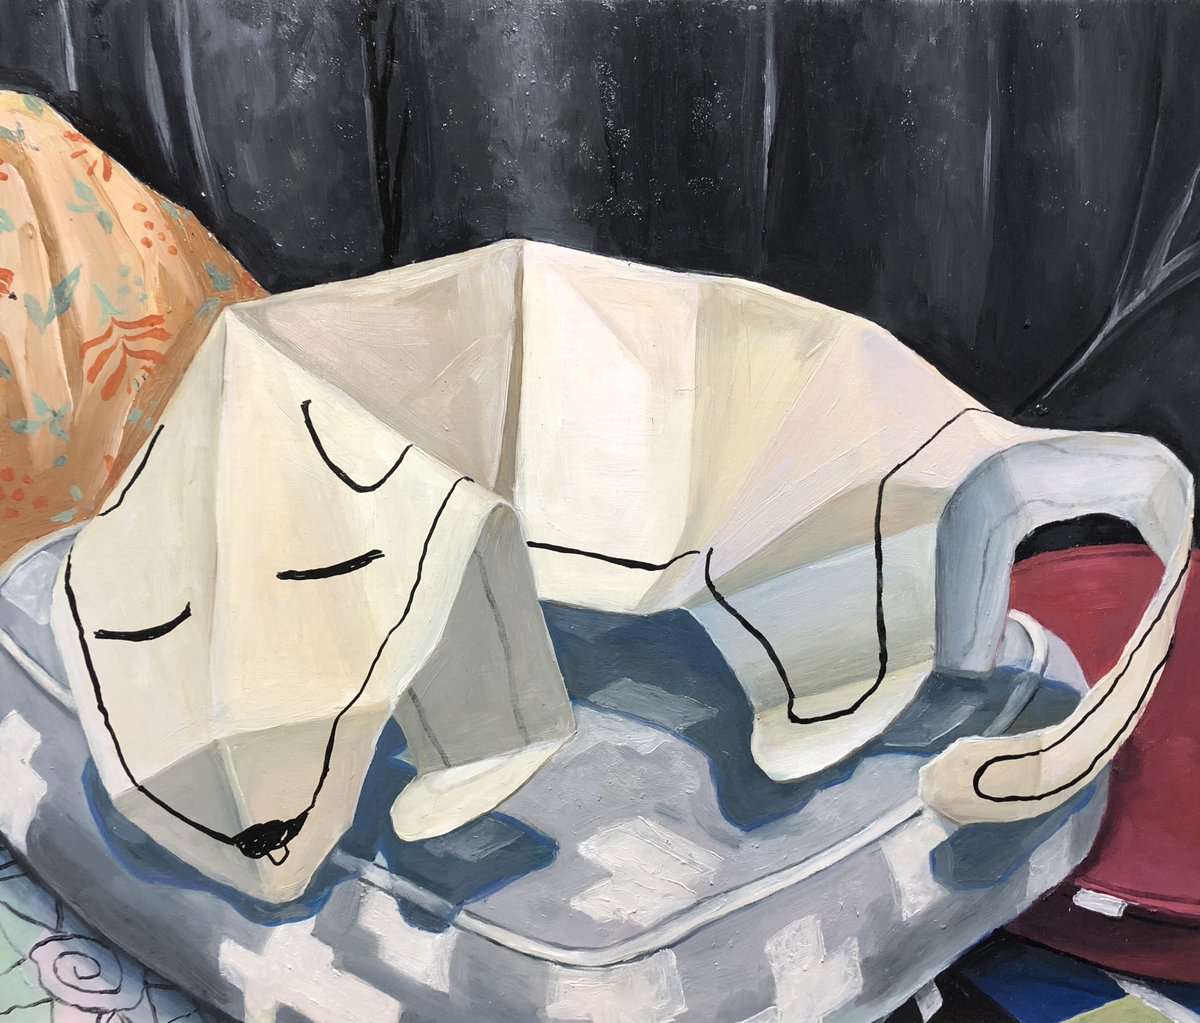 「「寝てる犬」

F10号(455×530mm)
キャンバスに油彩、ペン 」|德永葵(ぶるー)のイラスト